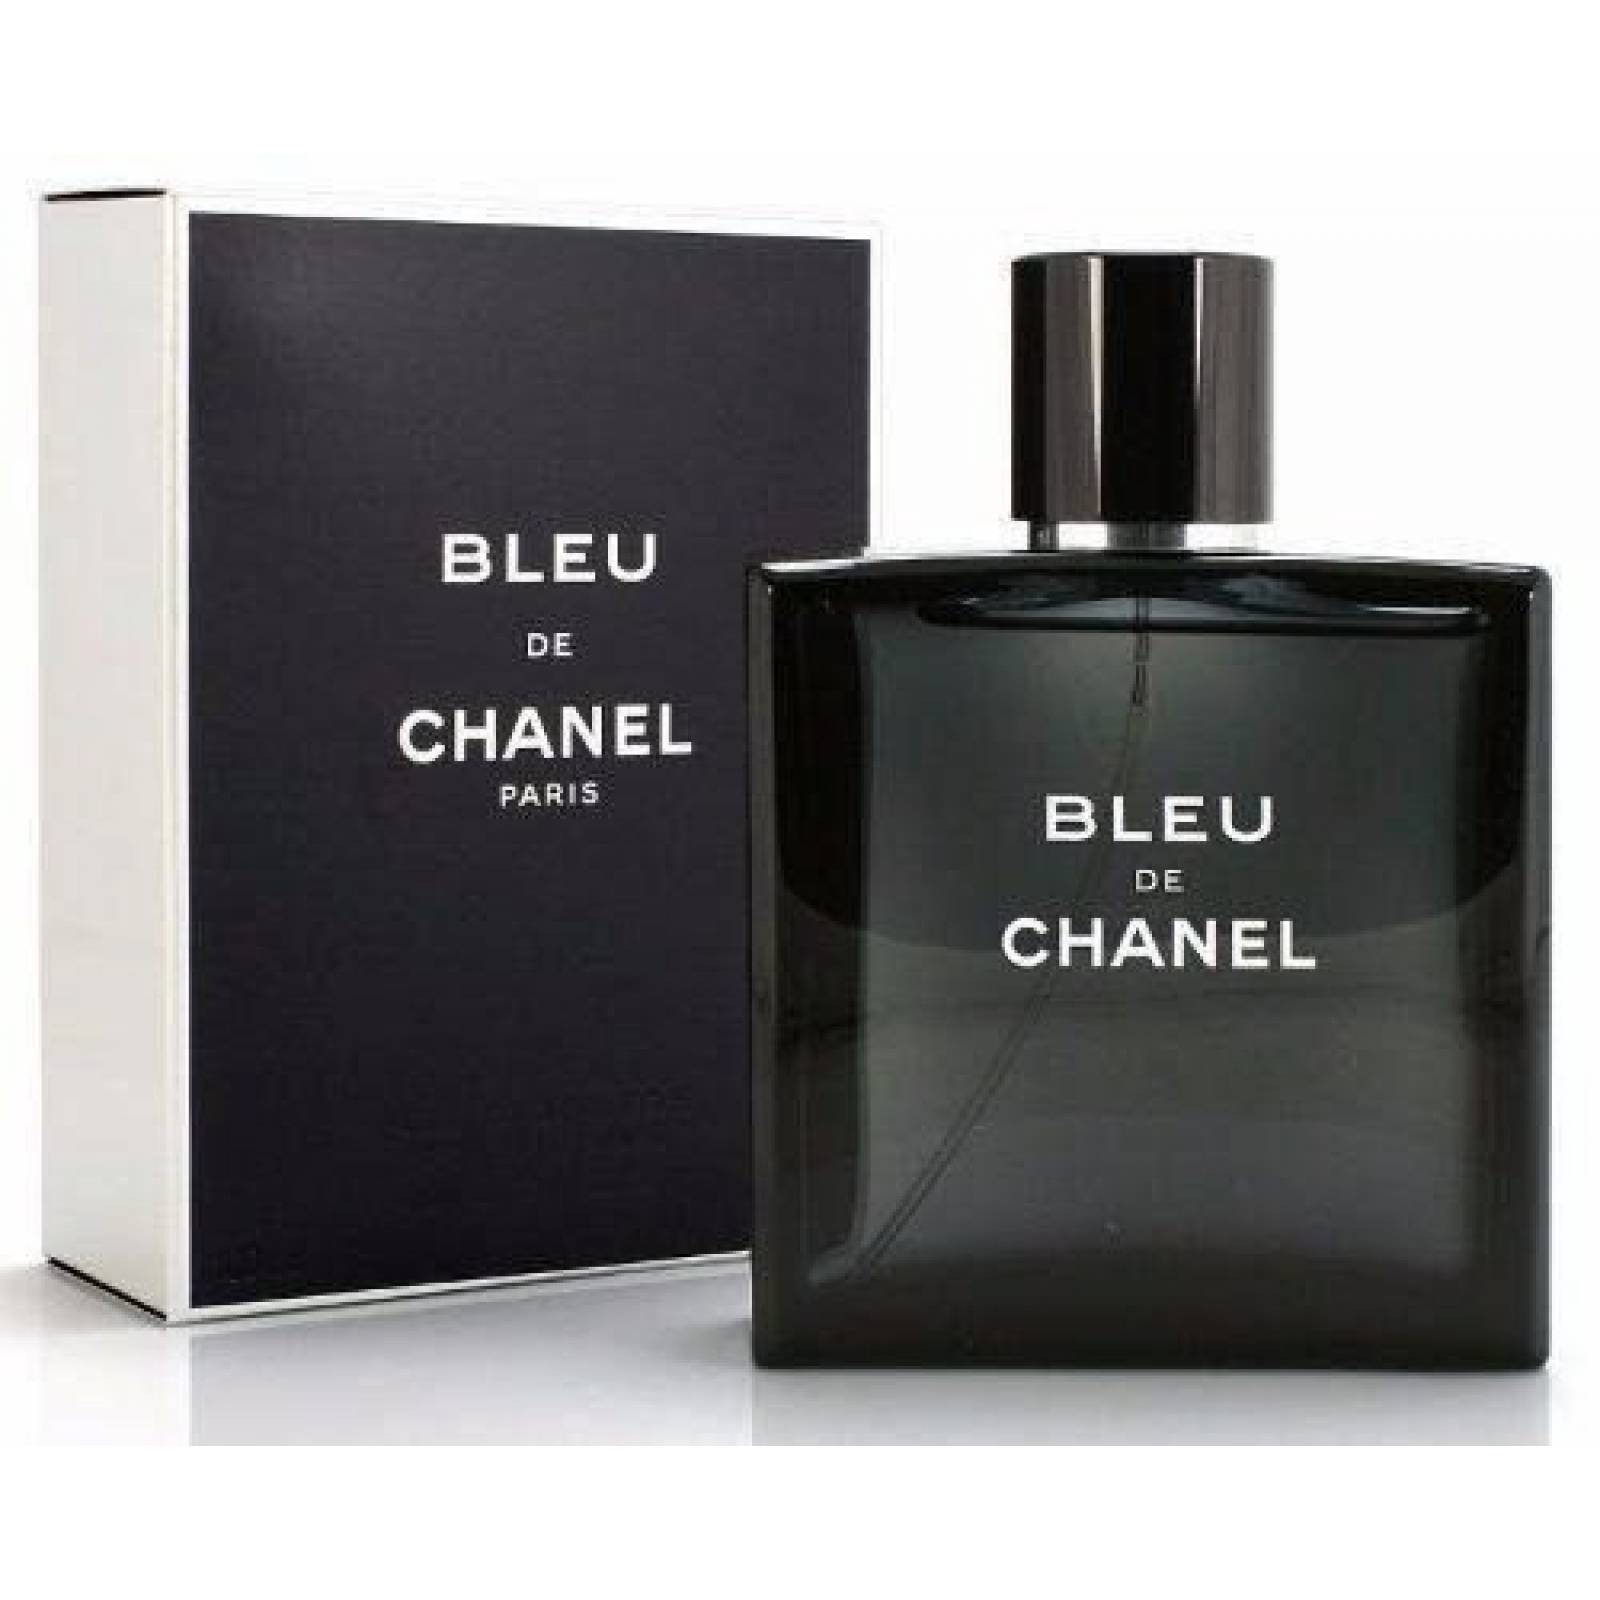 Chanel Bleu Caballero 100 Ml Chanel Spray - Perfume Original